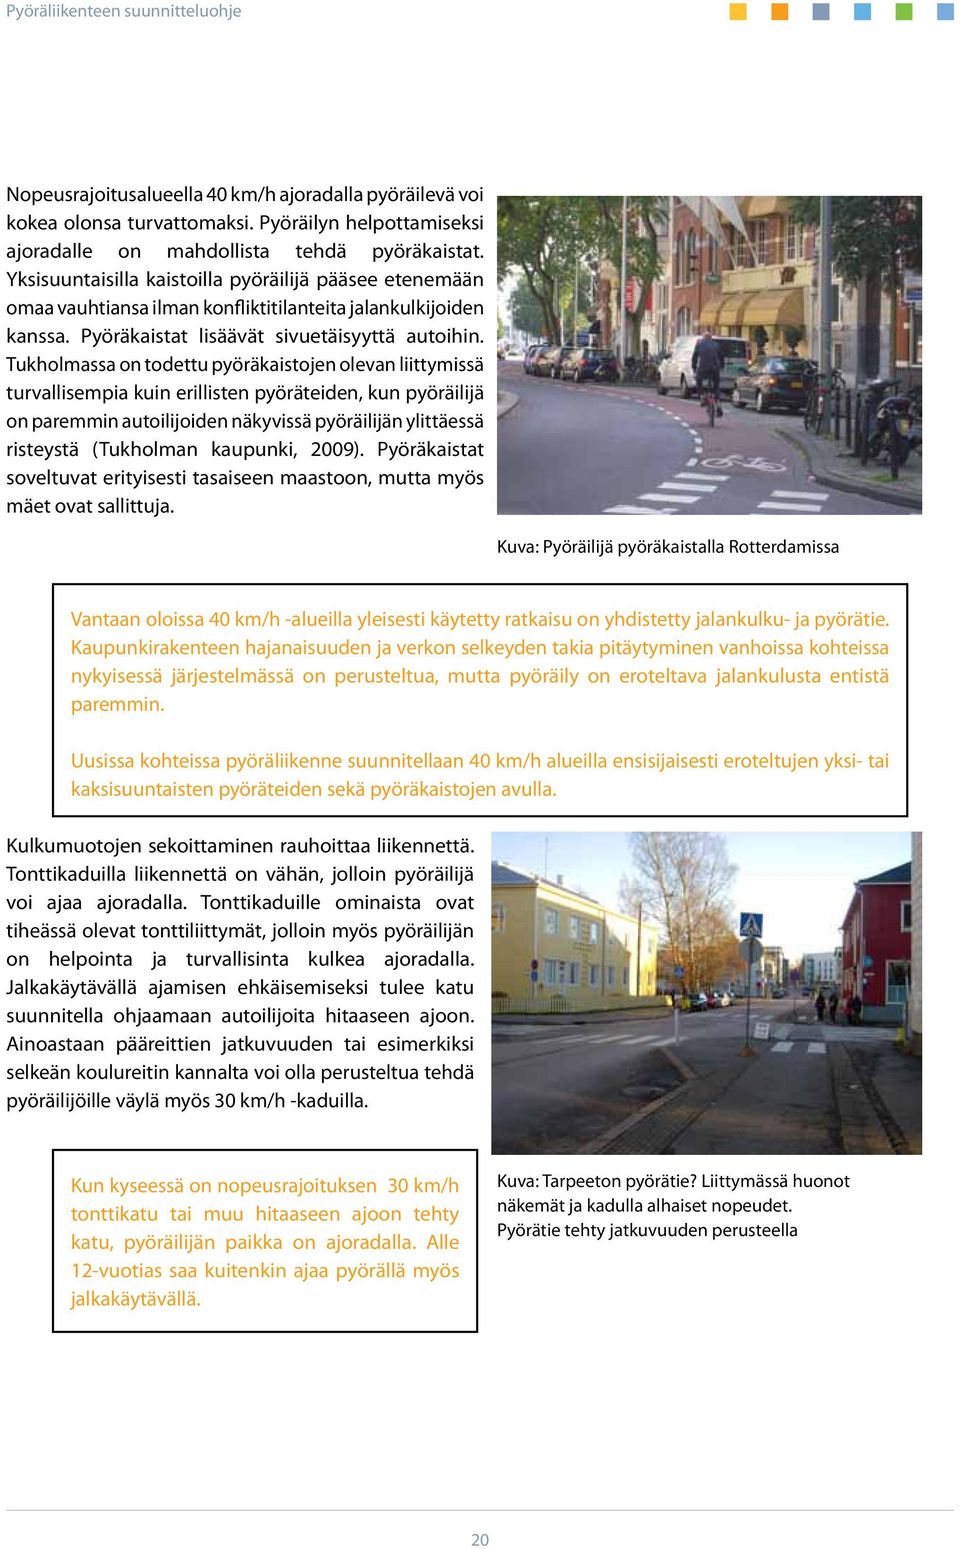 Tukholmassa on todettu pyöräkaistojen olevan liittymissä turvallisempia kuin erillisten pyöräteiden, kun pyöräilijä on paremmin autoilijoiden näkyvissä pyöräilijän ylittäessä risteystä (Tukholman